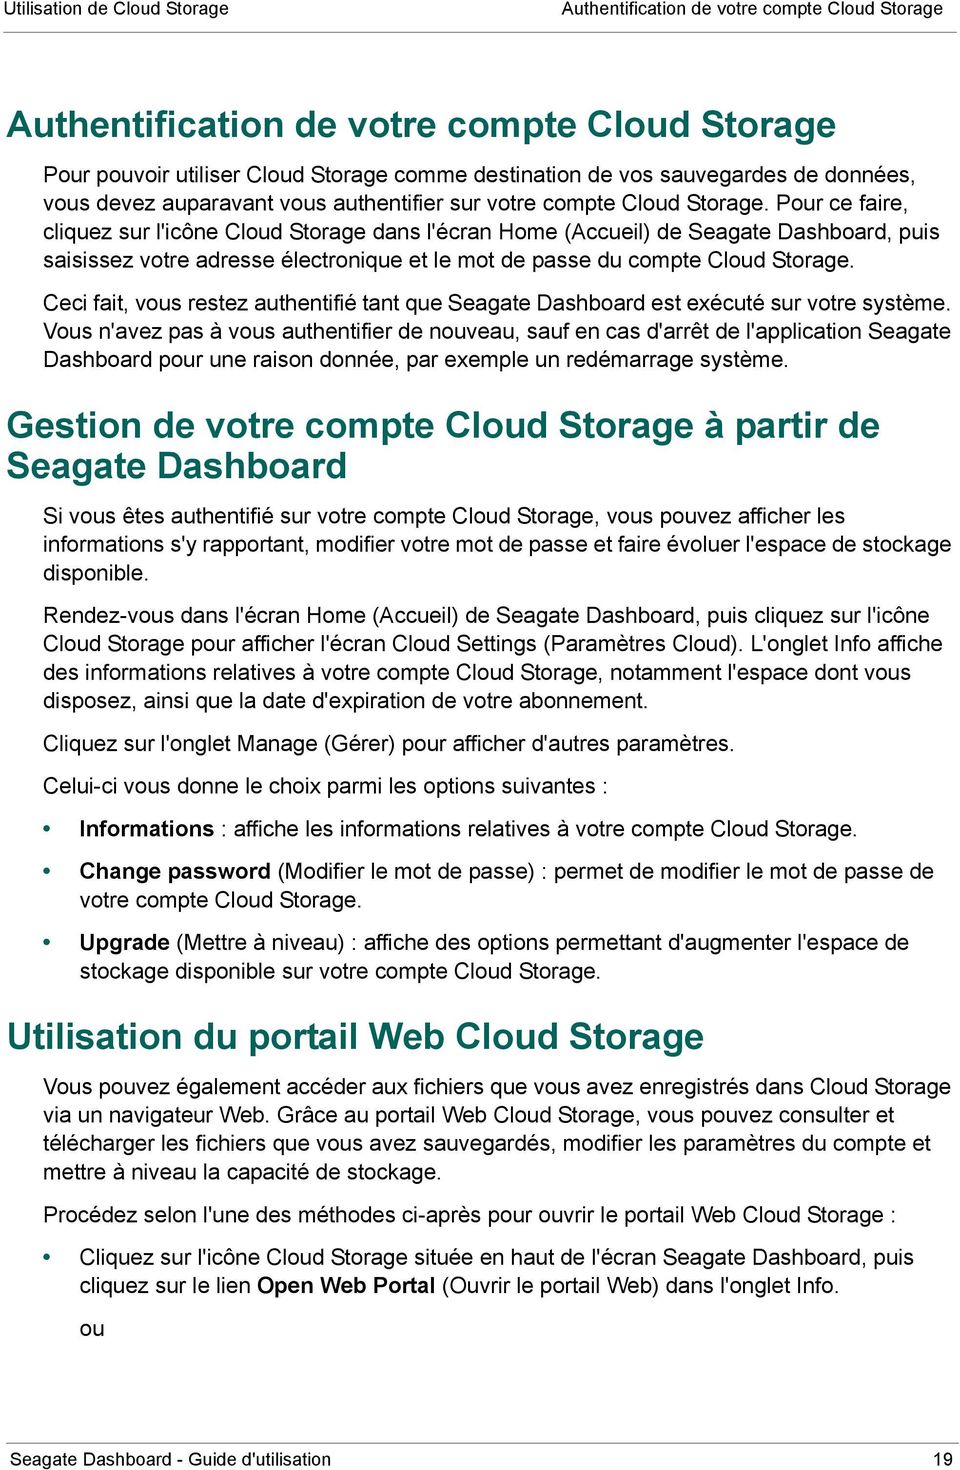 Pour ce faire, cliquez sur l'icône Cloud Storage dans l'écran Home (Accueil) de Seagate Dashboard, puis saisissez votre adresse électronique et le mot de passe du compte Cloud Storage.